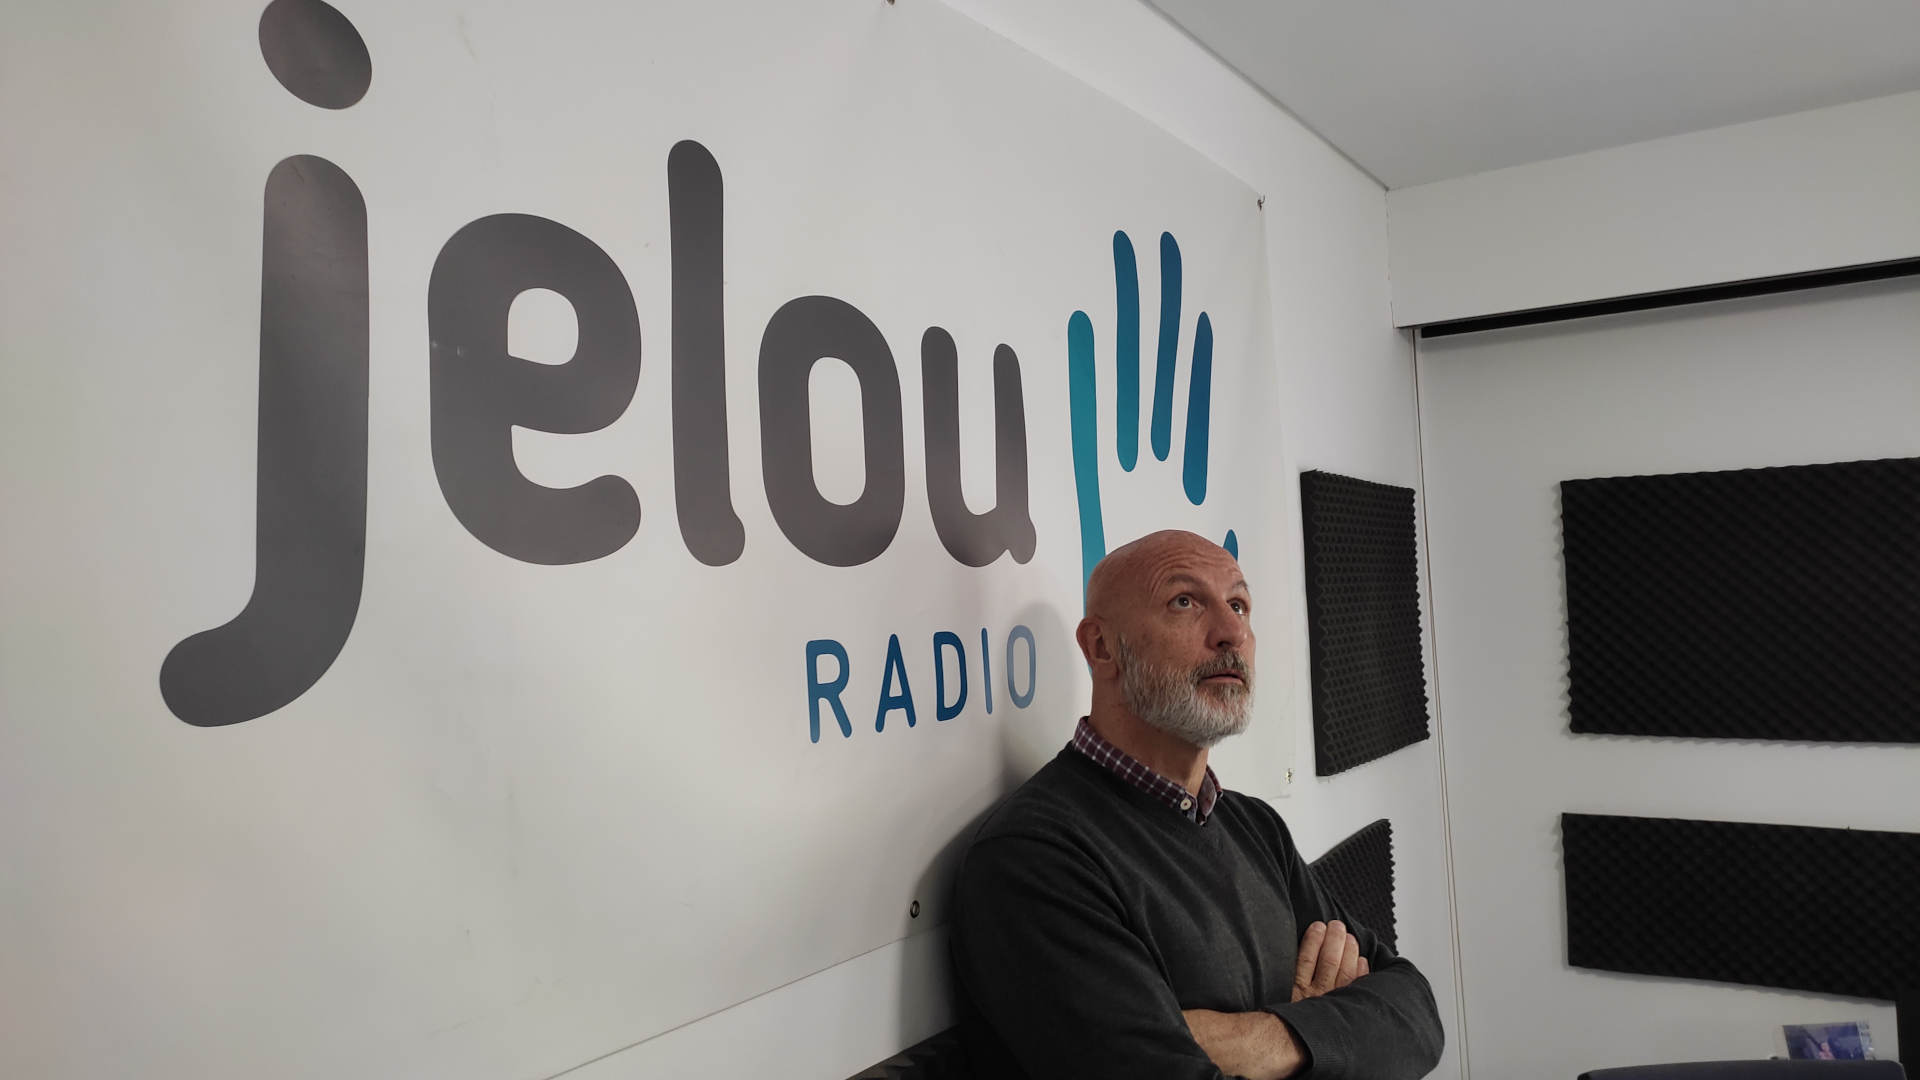 'Jelou Radio', la voz y la tecnología